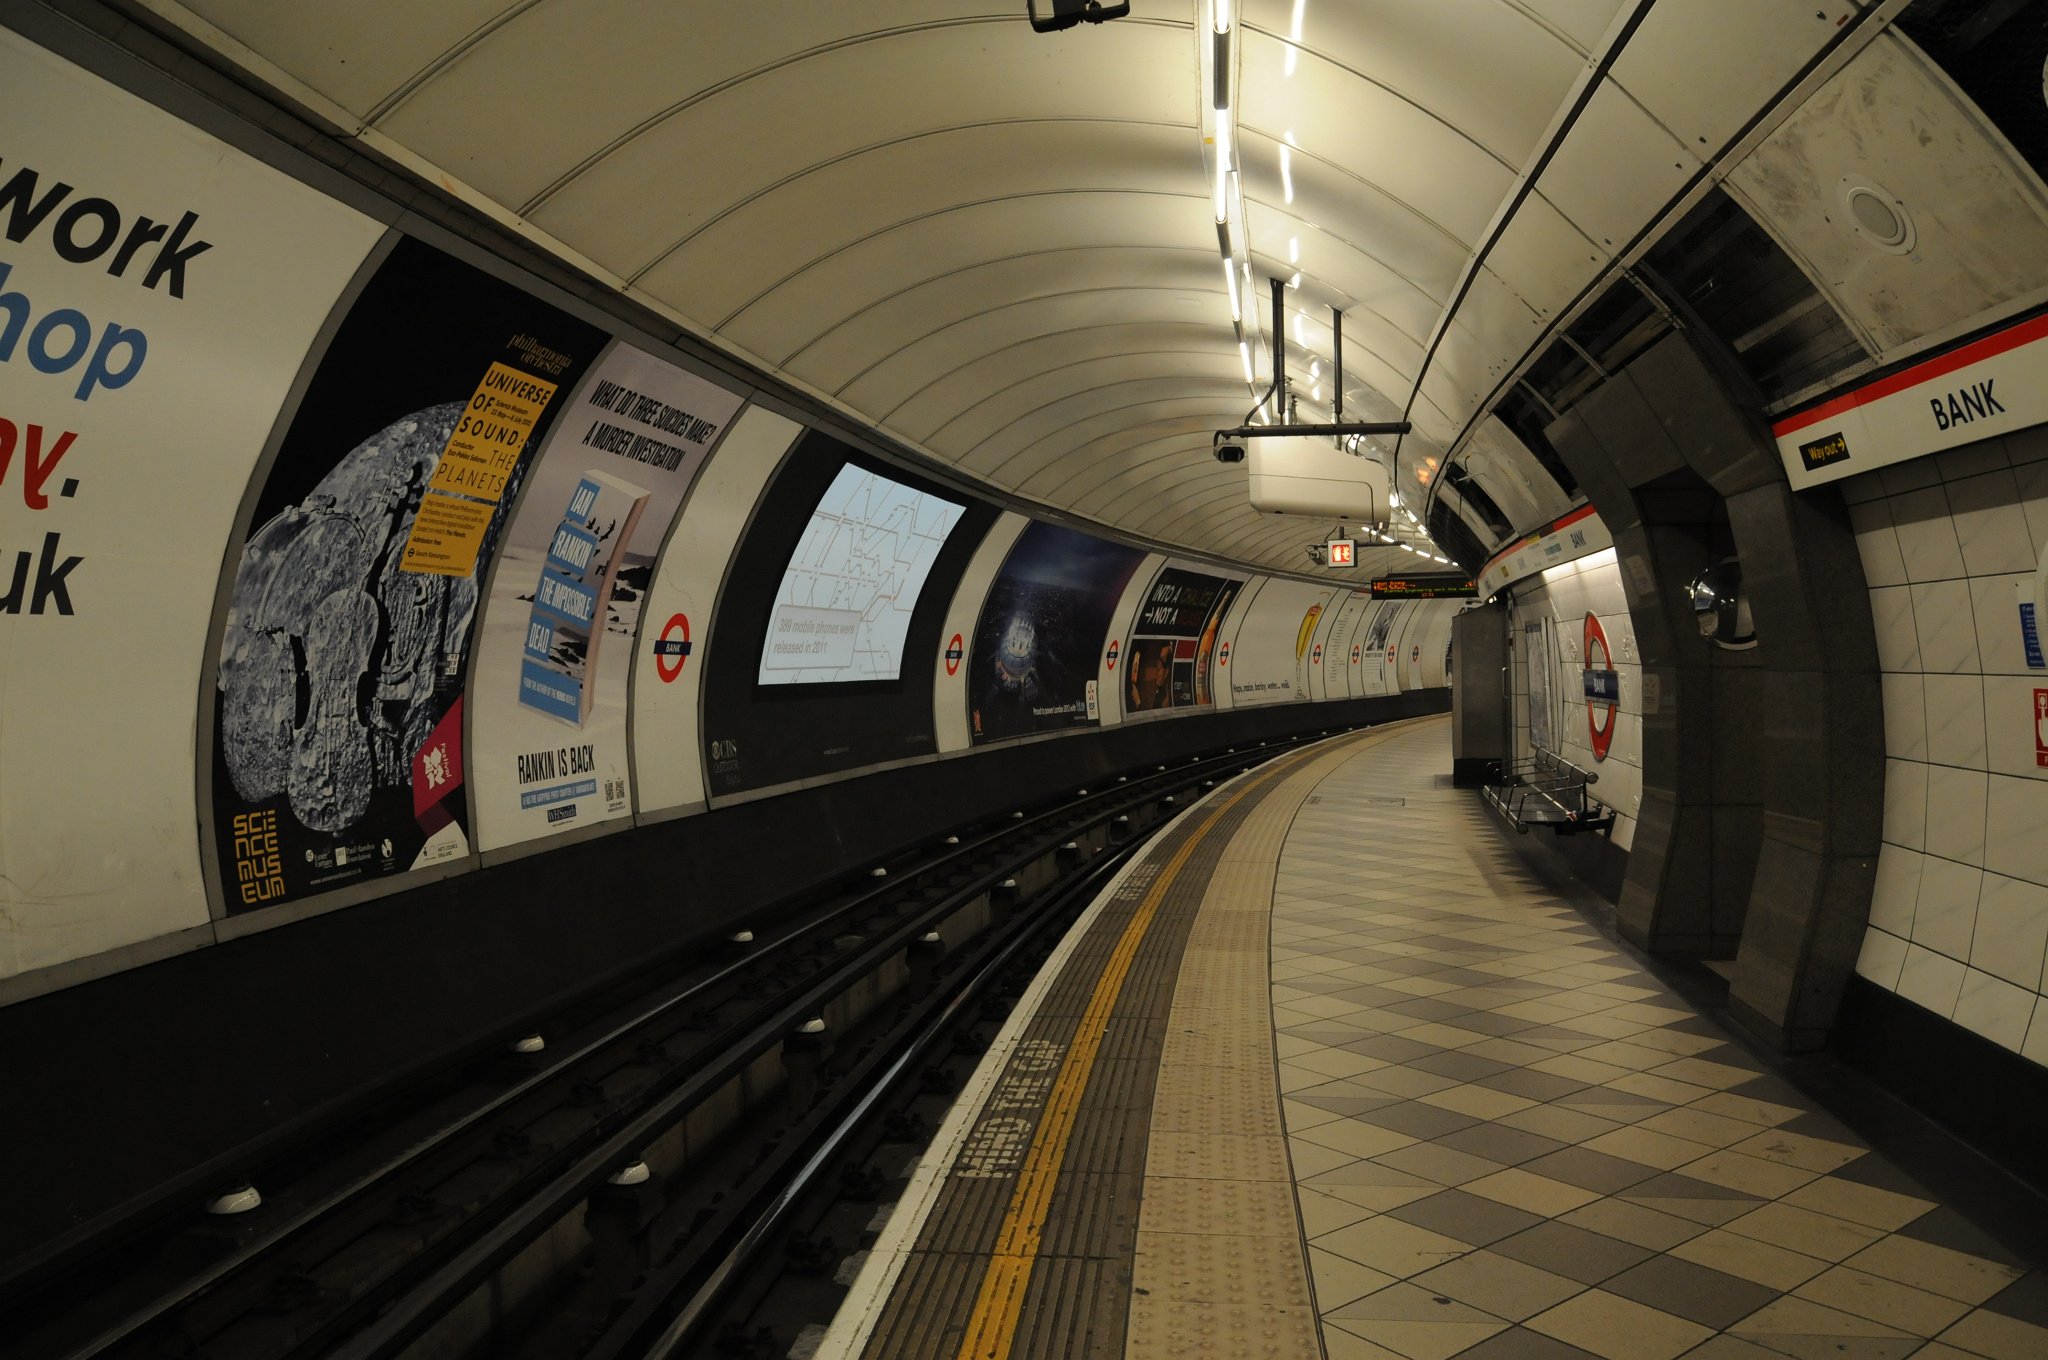 DSC_3691.JPG - Bank-Monument je komplex stanic londýnského metra a Docklands Light Railway v londýnské City. Stanicí Bank (pojmenované po Bank of England) prochází linky Northern, Central, Waterloo & City a DLR. Stanicí Monument (pojmenované po památníku Velkého požáru Londýna) prochází linky Distric a Circle.Celý komplex tvoří osmou nejvytíženější stanici londýnského metra a v roce 2009 zde vystoupilo a nastoupilo přes 40 miliónů cestujících.